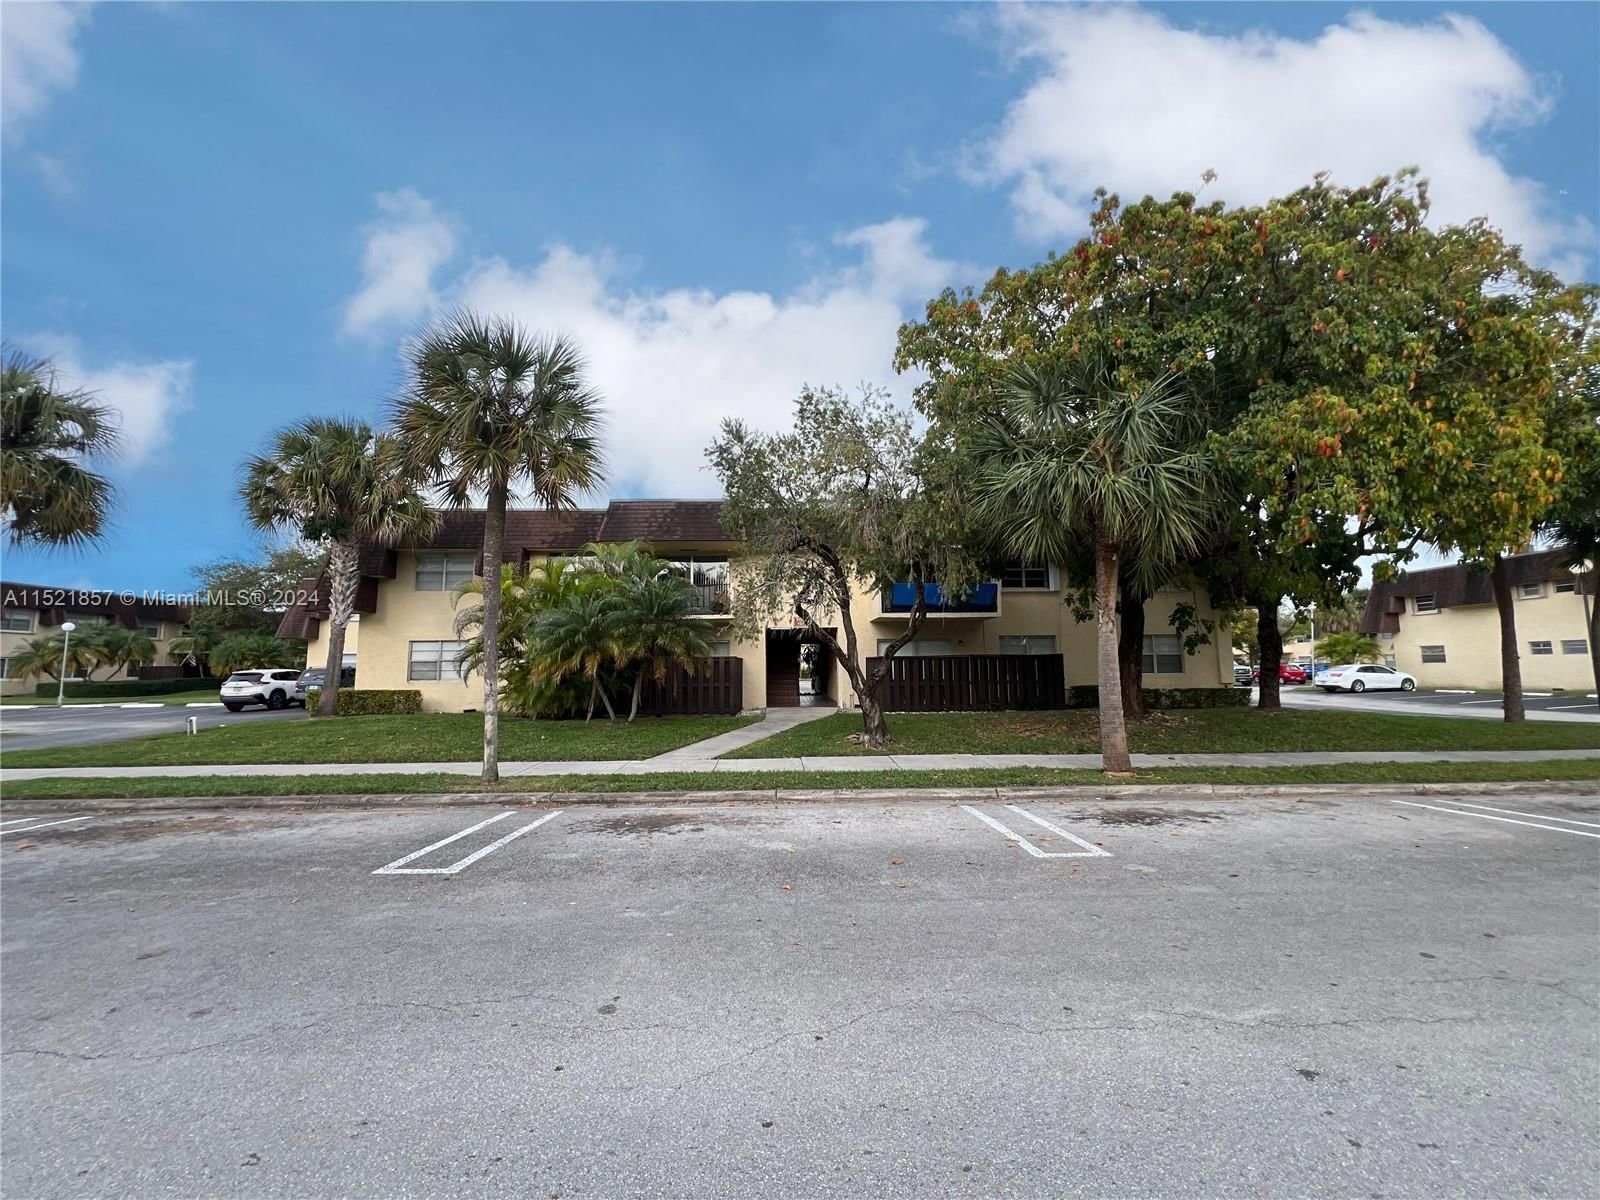 Real estate property located at 9015 138th St #16-2, Miami-Dade County, HEATHER WALK CONDO, Miami, FL